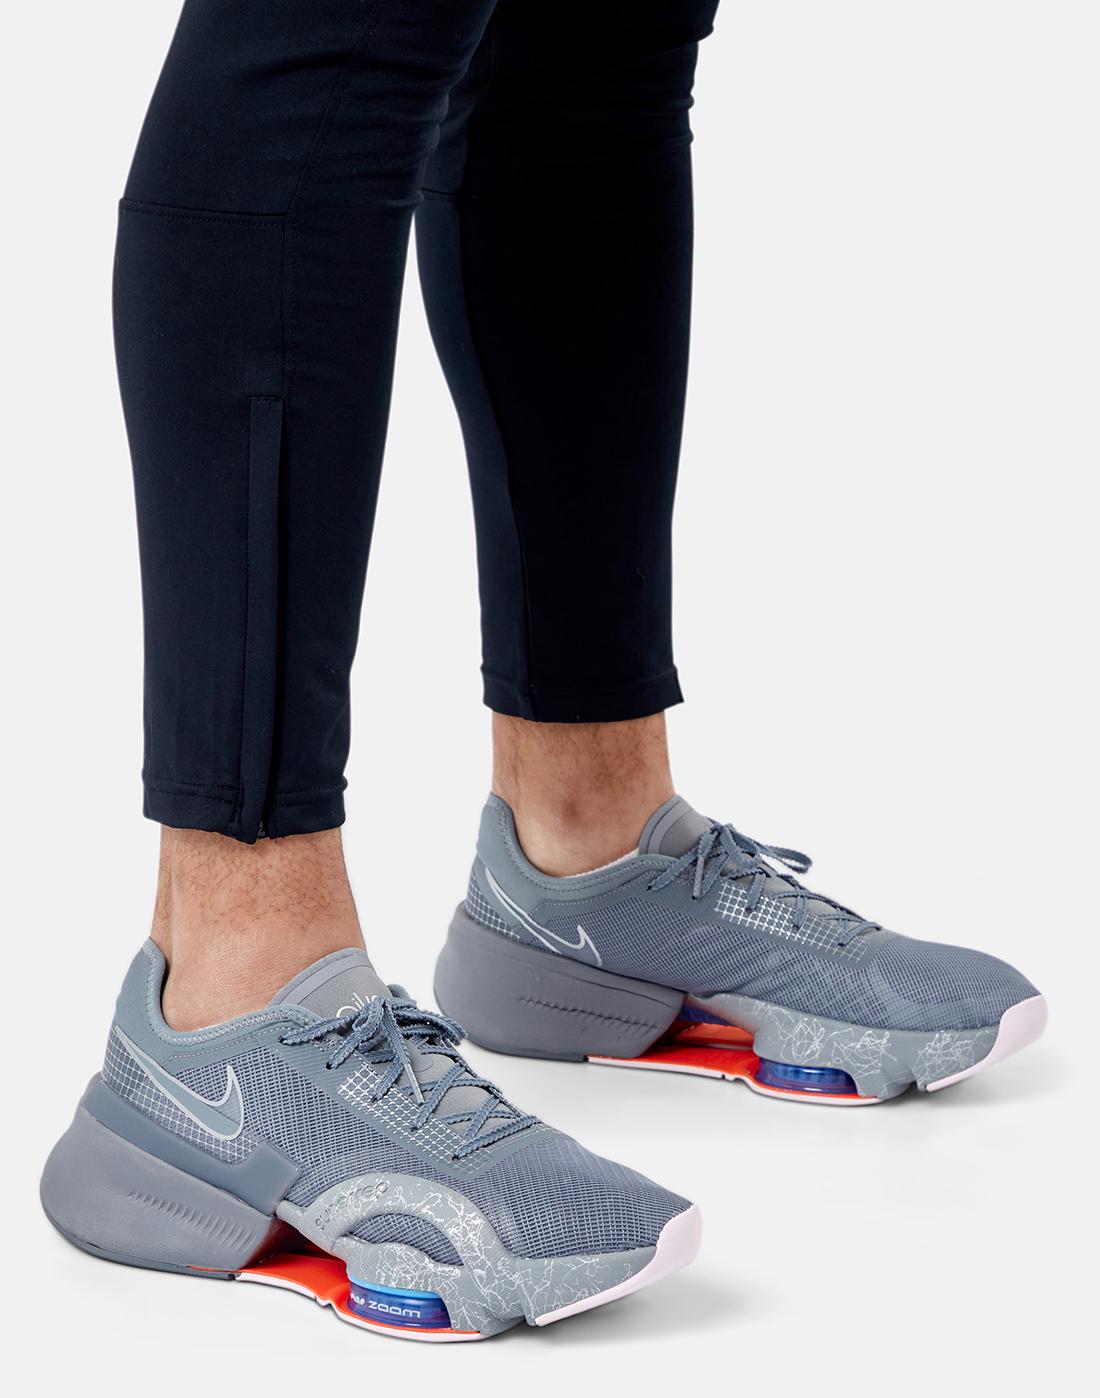 5 รองเท้าเทรนนิ่ง Nike ที่รองรับการใช้งานได้อย่างมีประสิทธิภาพ8